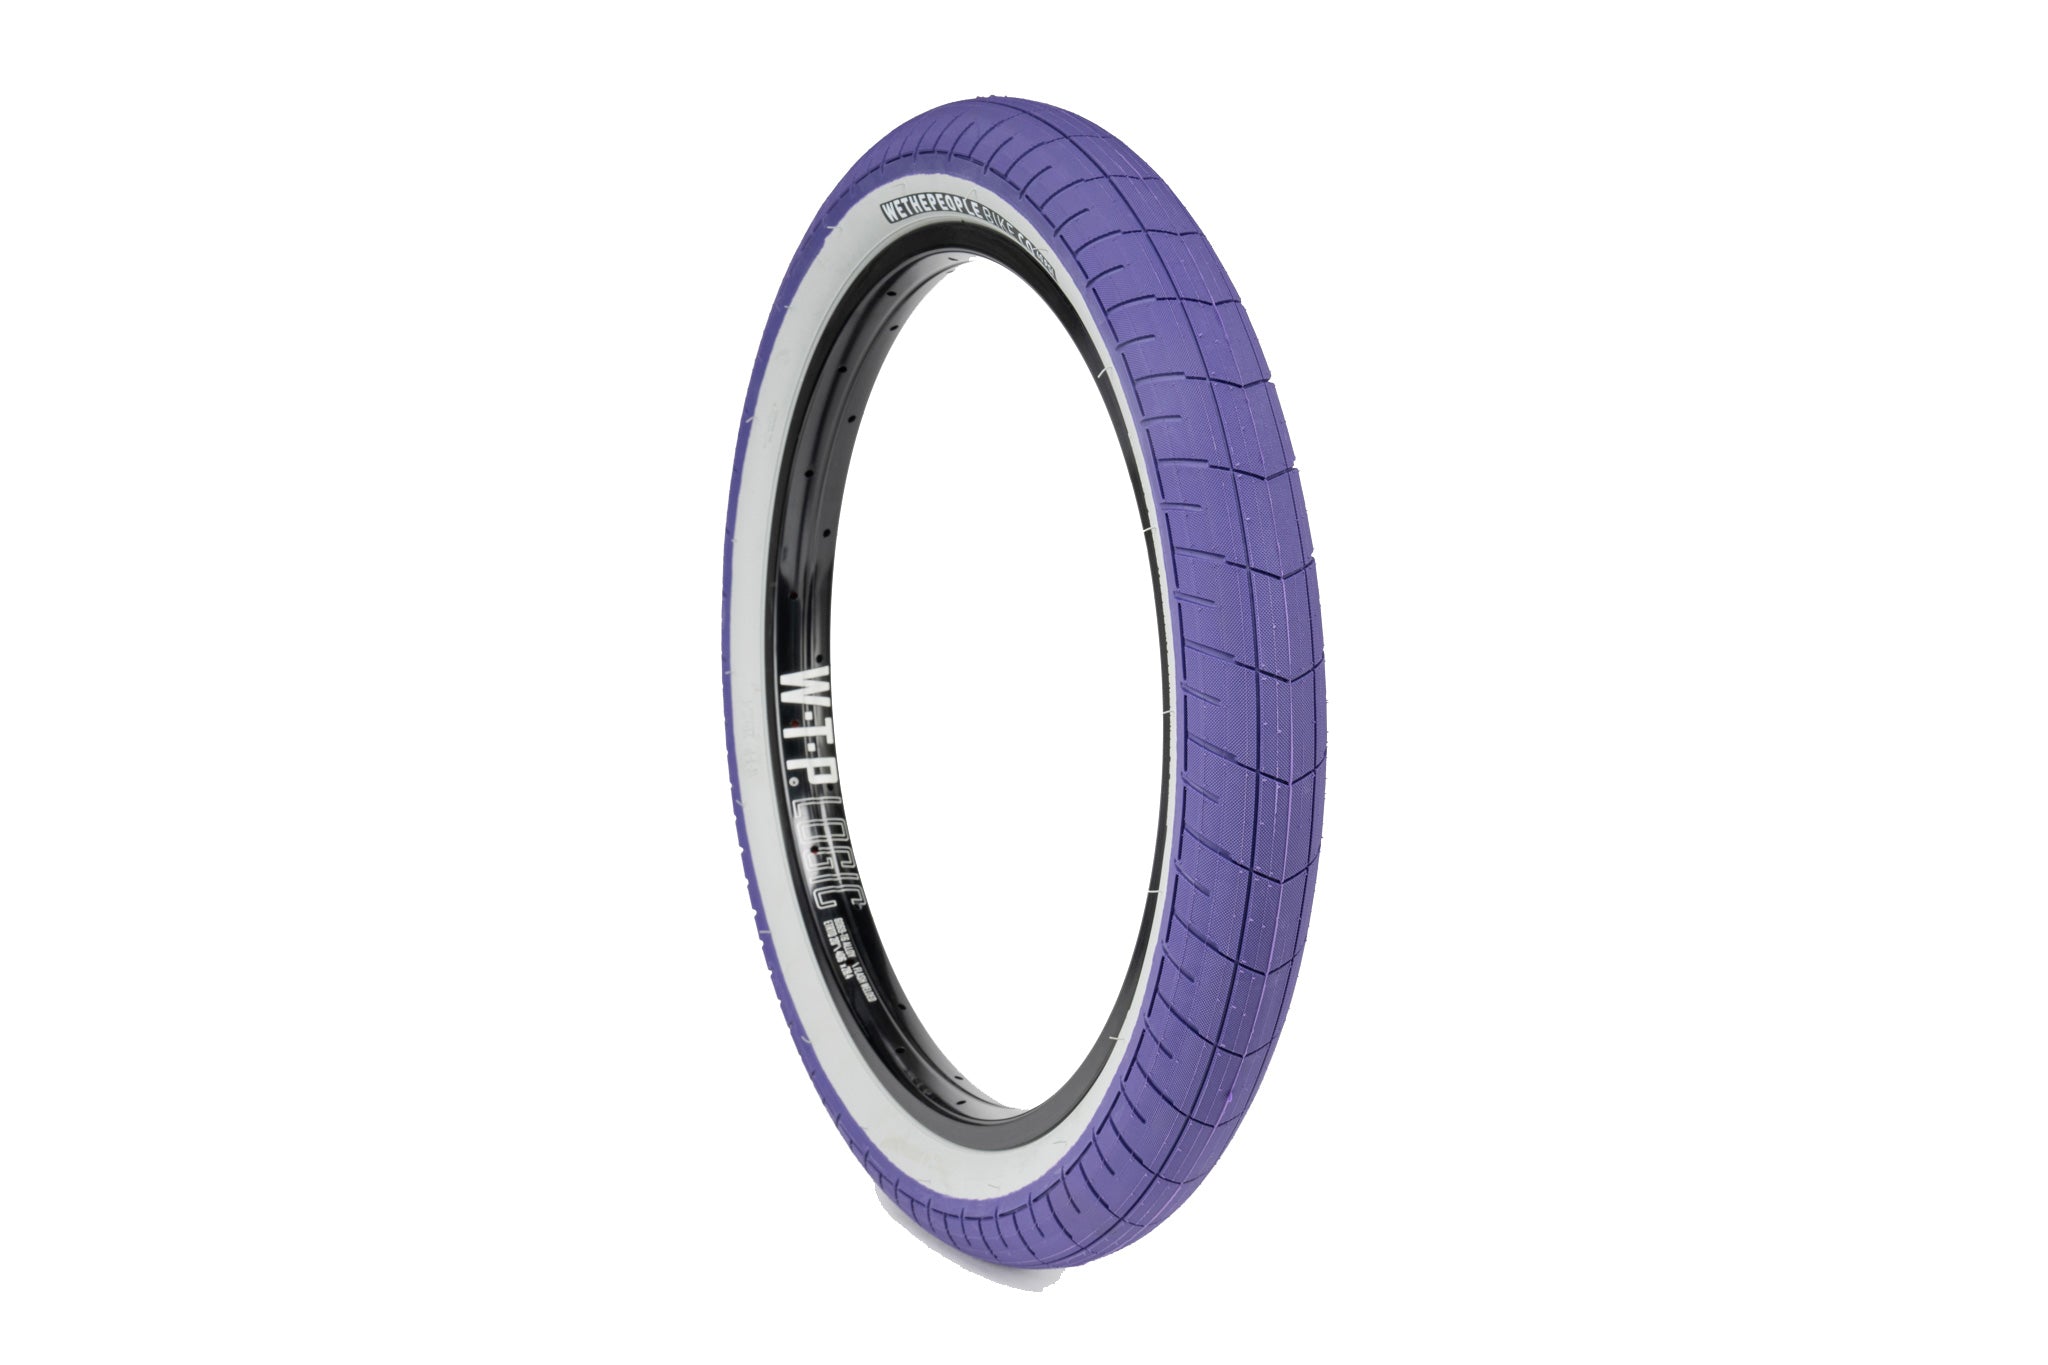 Wethepeople activate Tyre - 2.35 - Purple